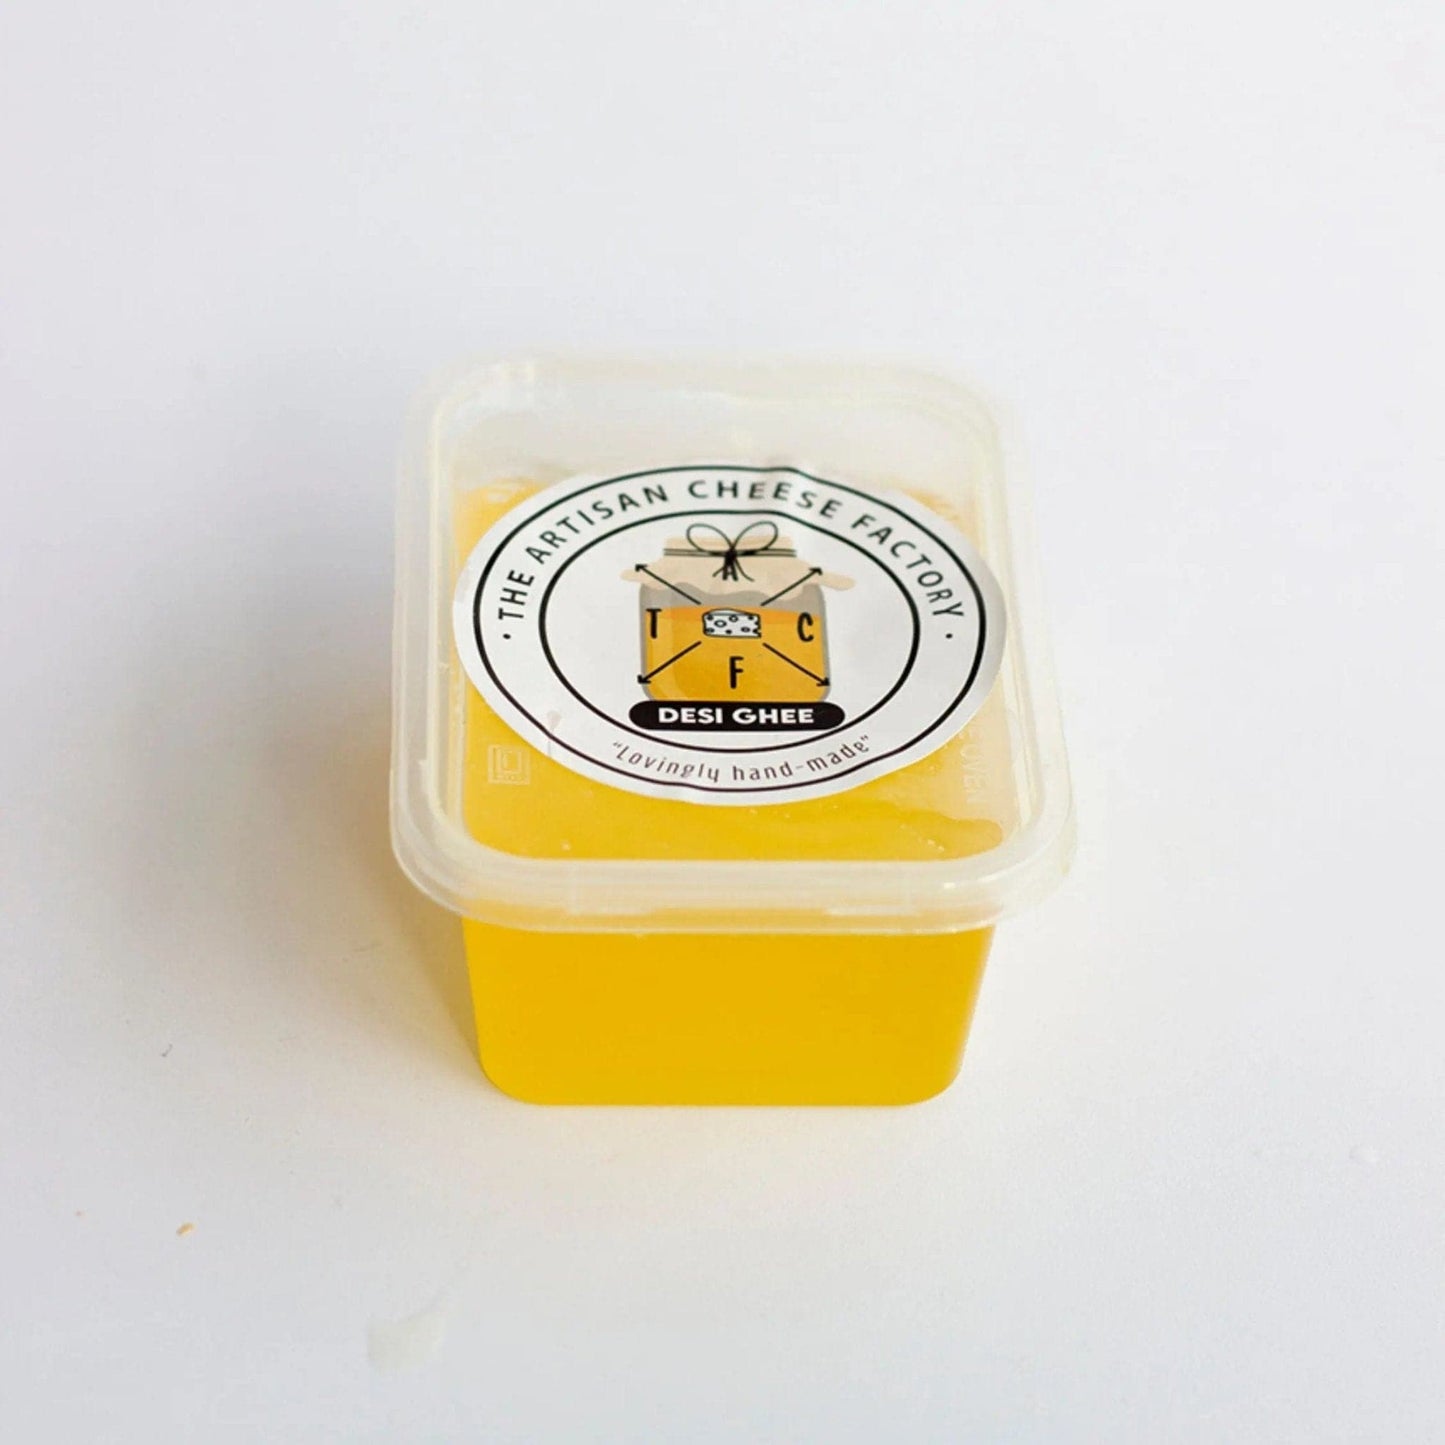 
                  
                    Desi Ghee - Artisan Cheese Factory
                  
                